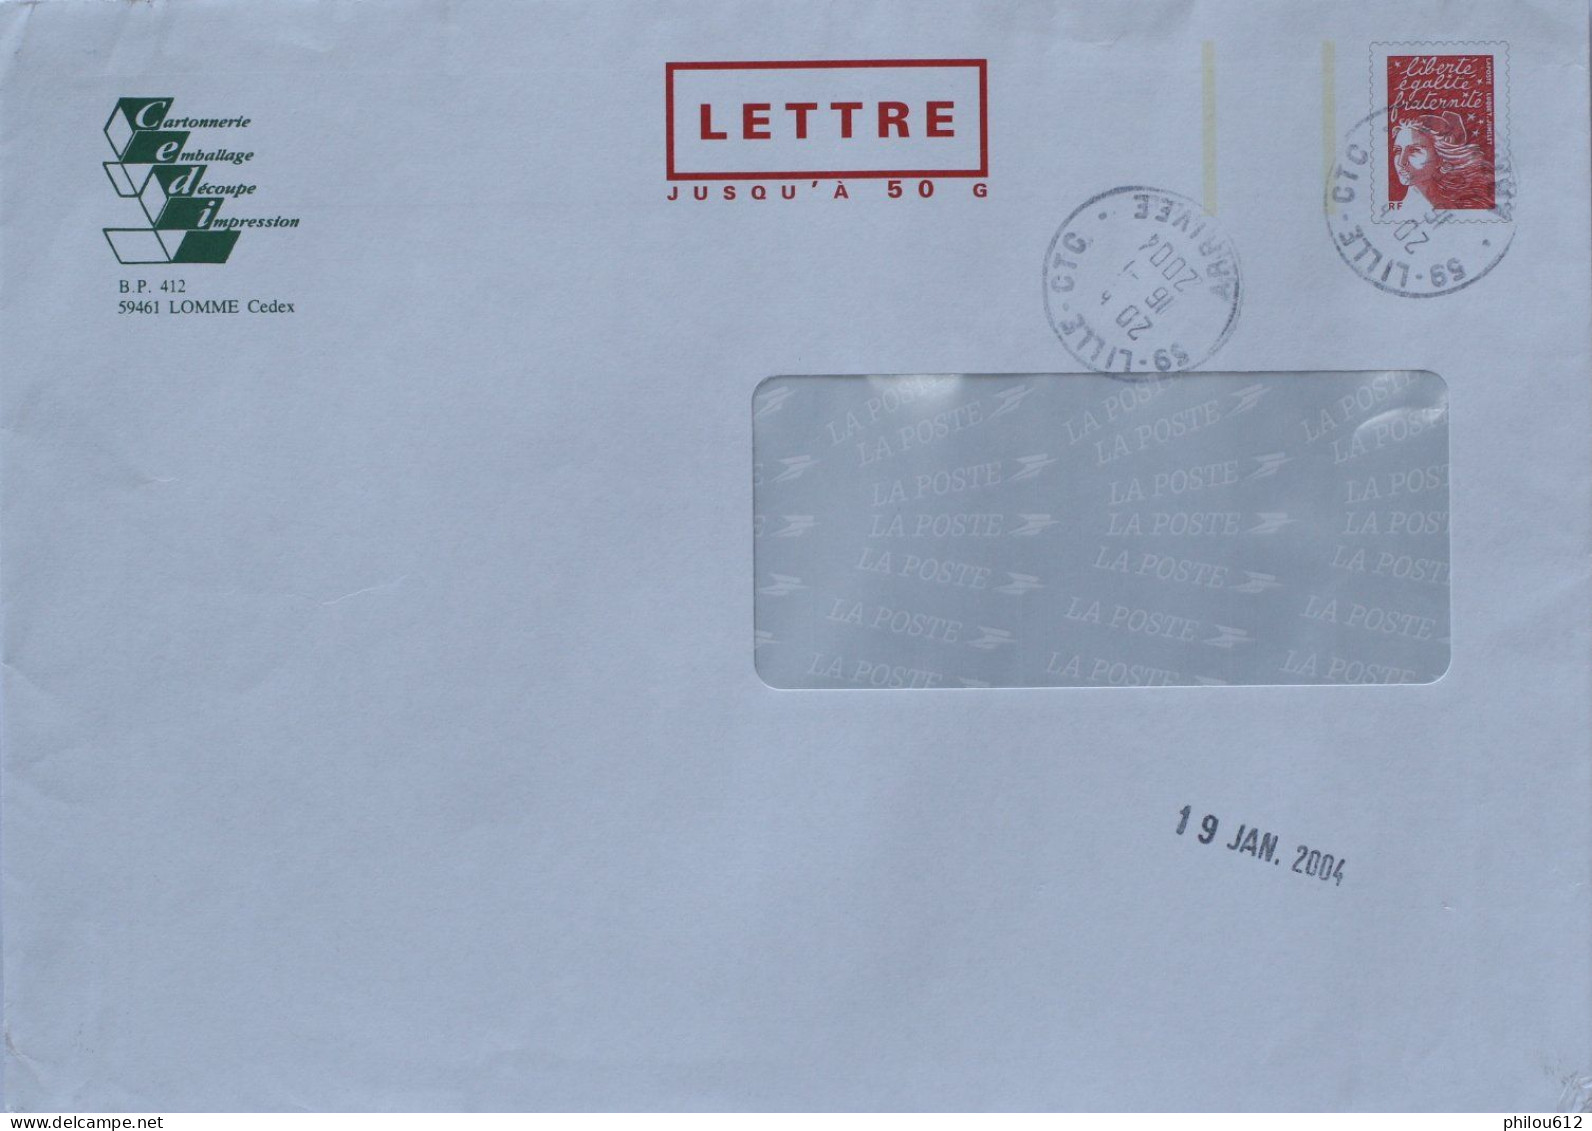 59 - Lomme -  PAP Repiquage Cartonnerie CEDI - Lettre 50G Avec Fenêtre - Obl Man Lille - 2004 - Listos Para Enviar: Respuesta /Luquet